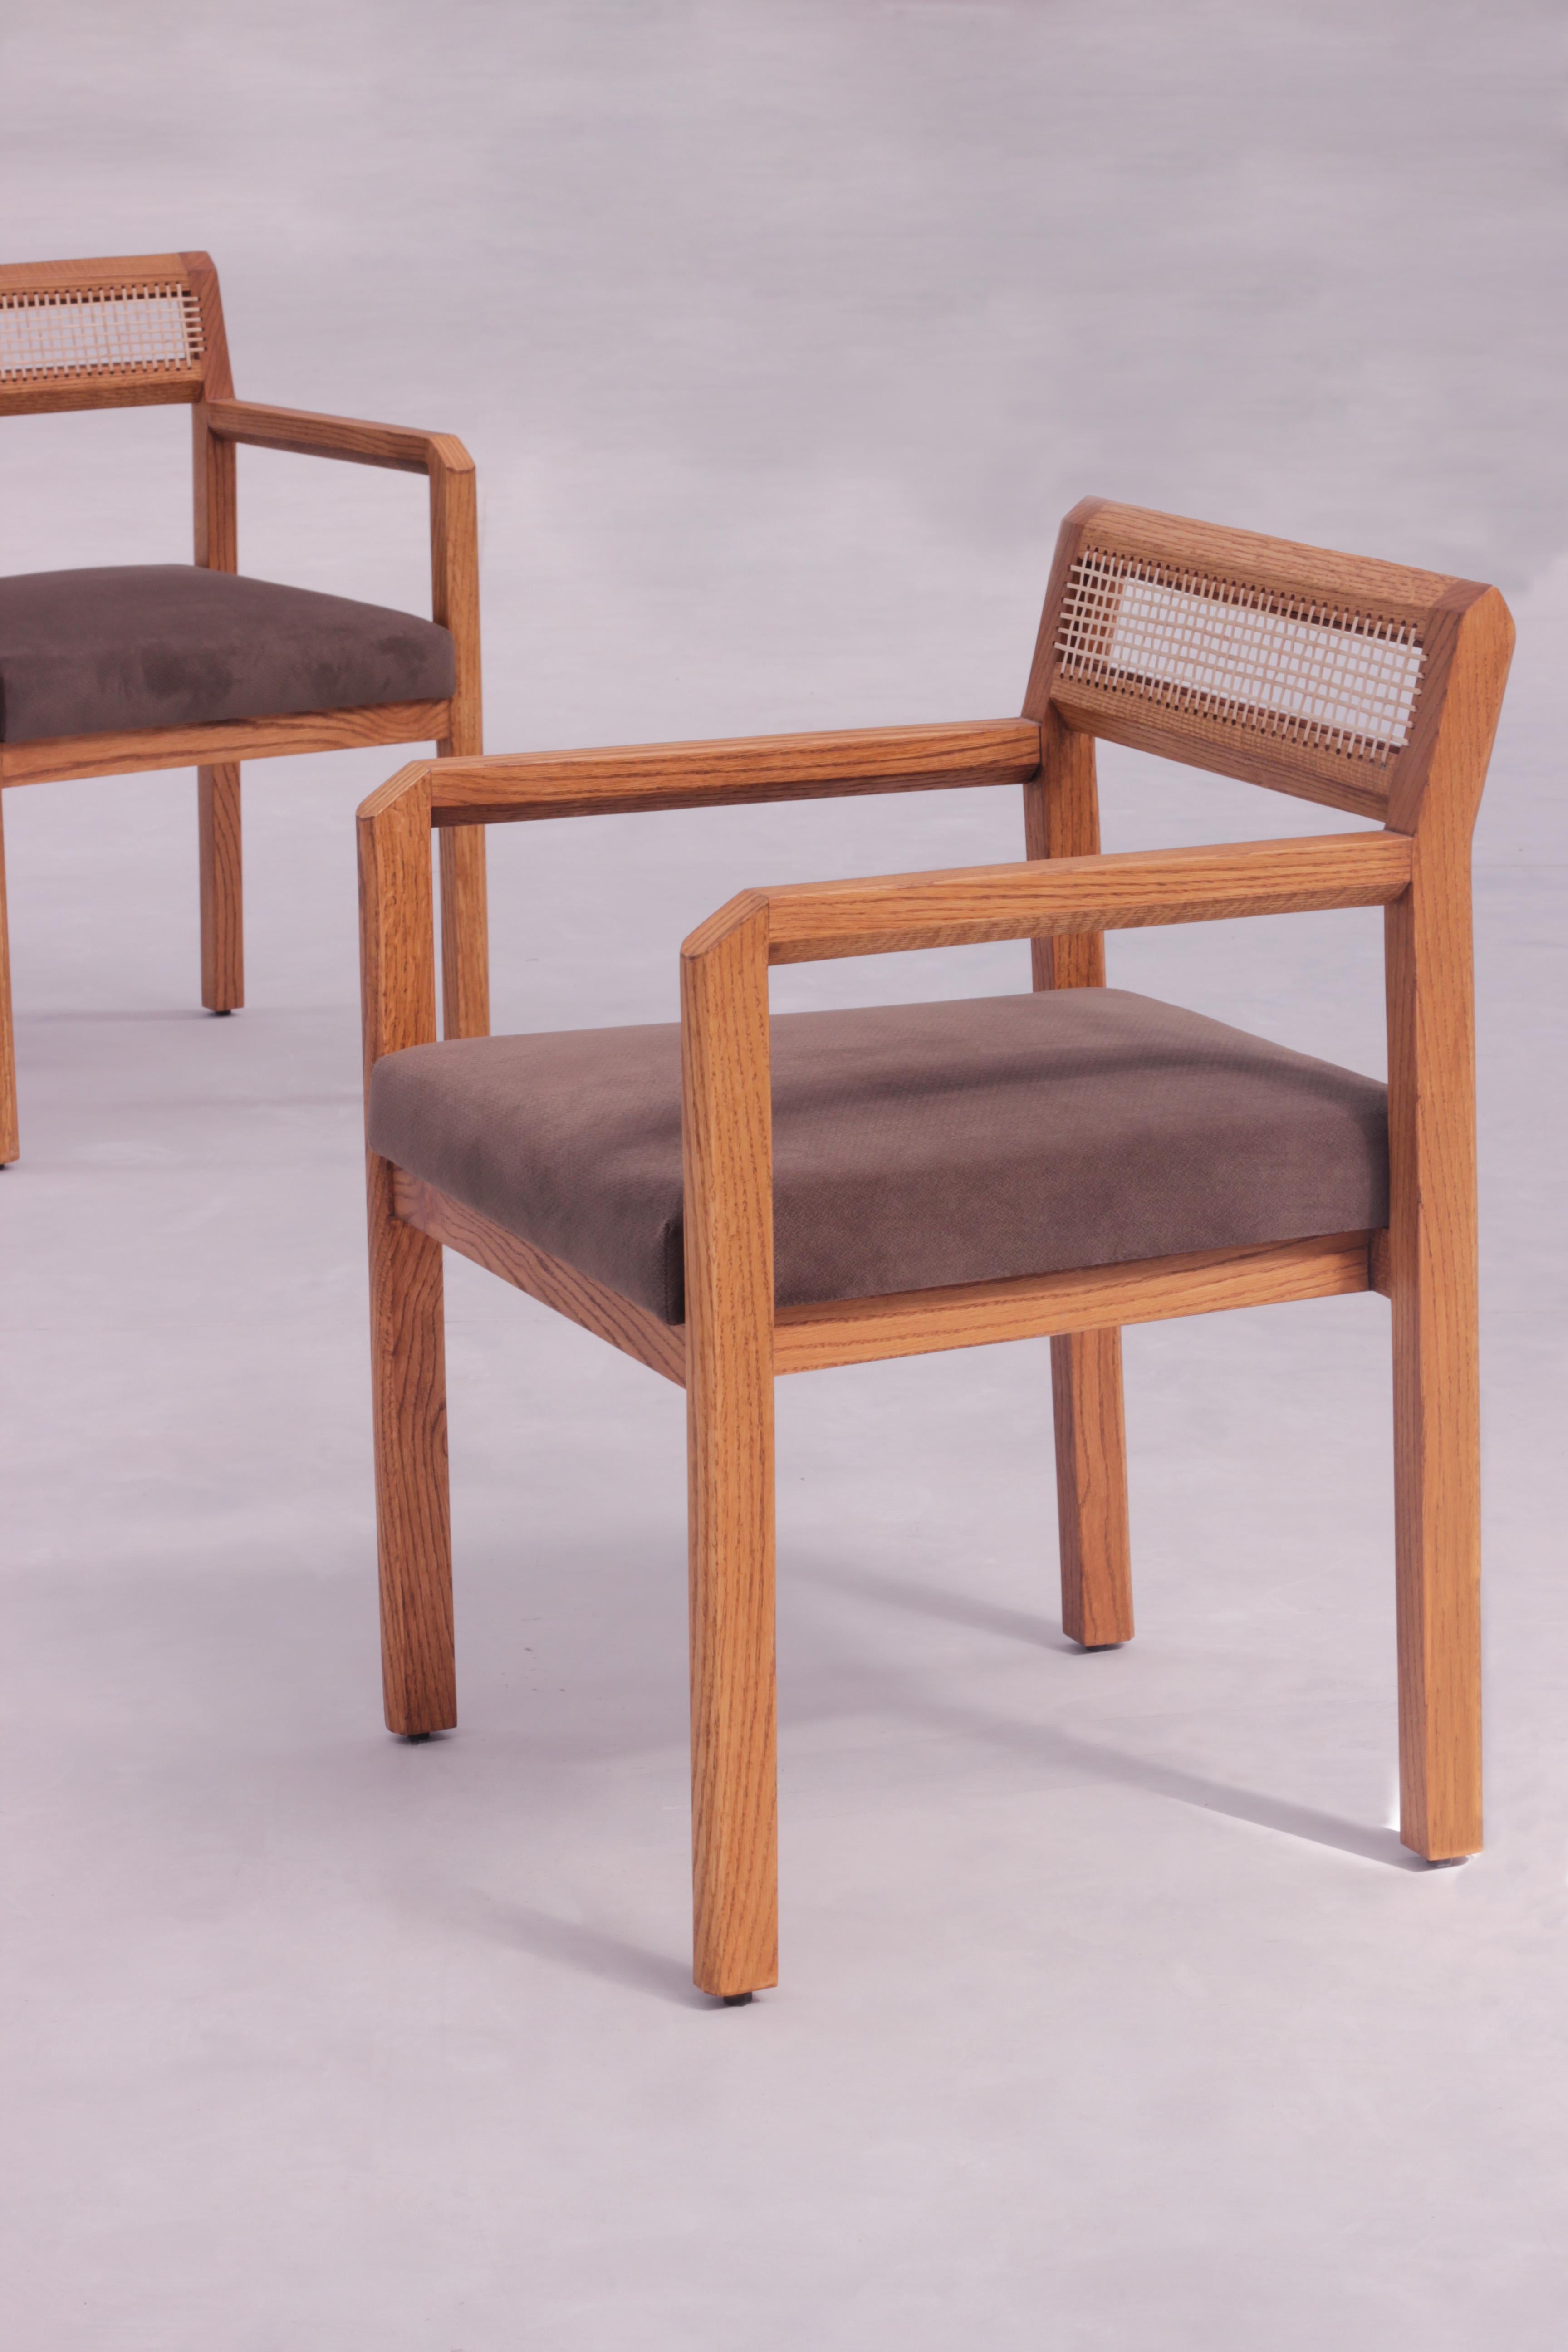 La chaise Jalore est un meuble étonnant qui convient parfaitement à toute maison moderne. Fabriquée en bois de chêne massif, cette chaise est dotée d'un dossier tactile fabriqué à la main avec des détails en rotin tressé qui est à la fois élégant et